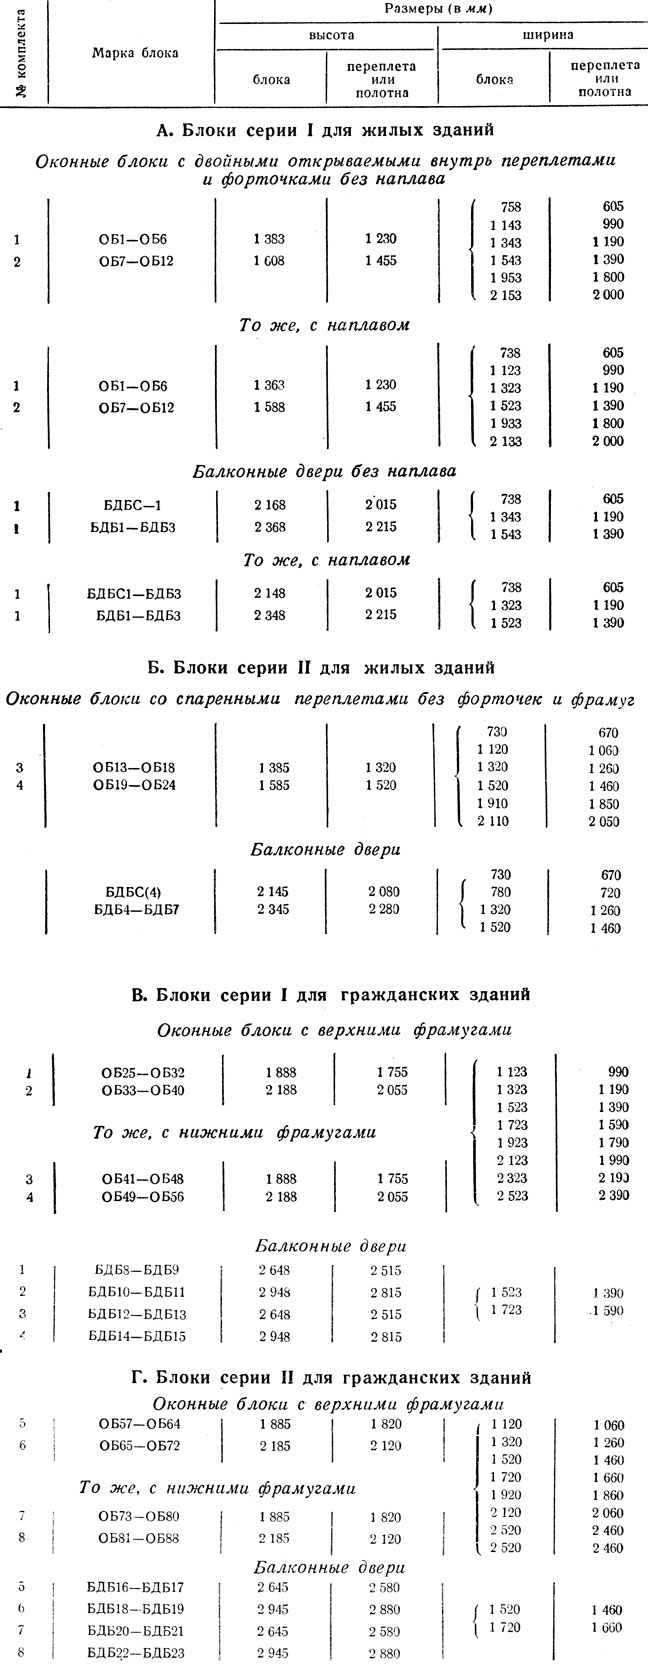 Таблица 1. Марки и размеры блоков окон и балконных дверей деревянных для жилых (ГОСТ 8671-58) и гражданских (ГОСТ 8780-58) зданий